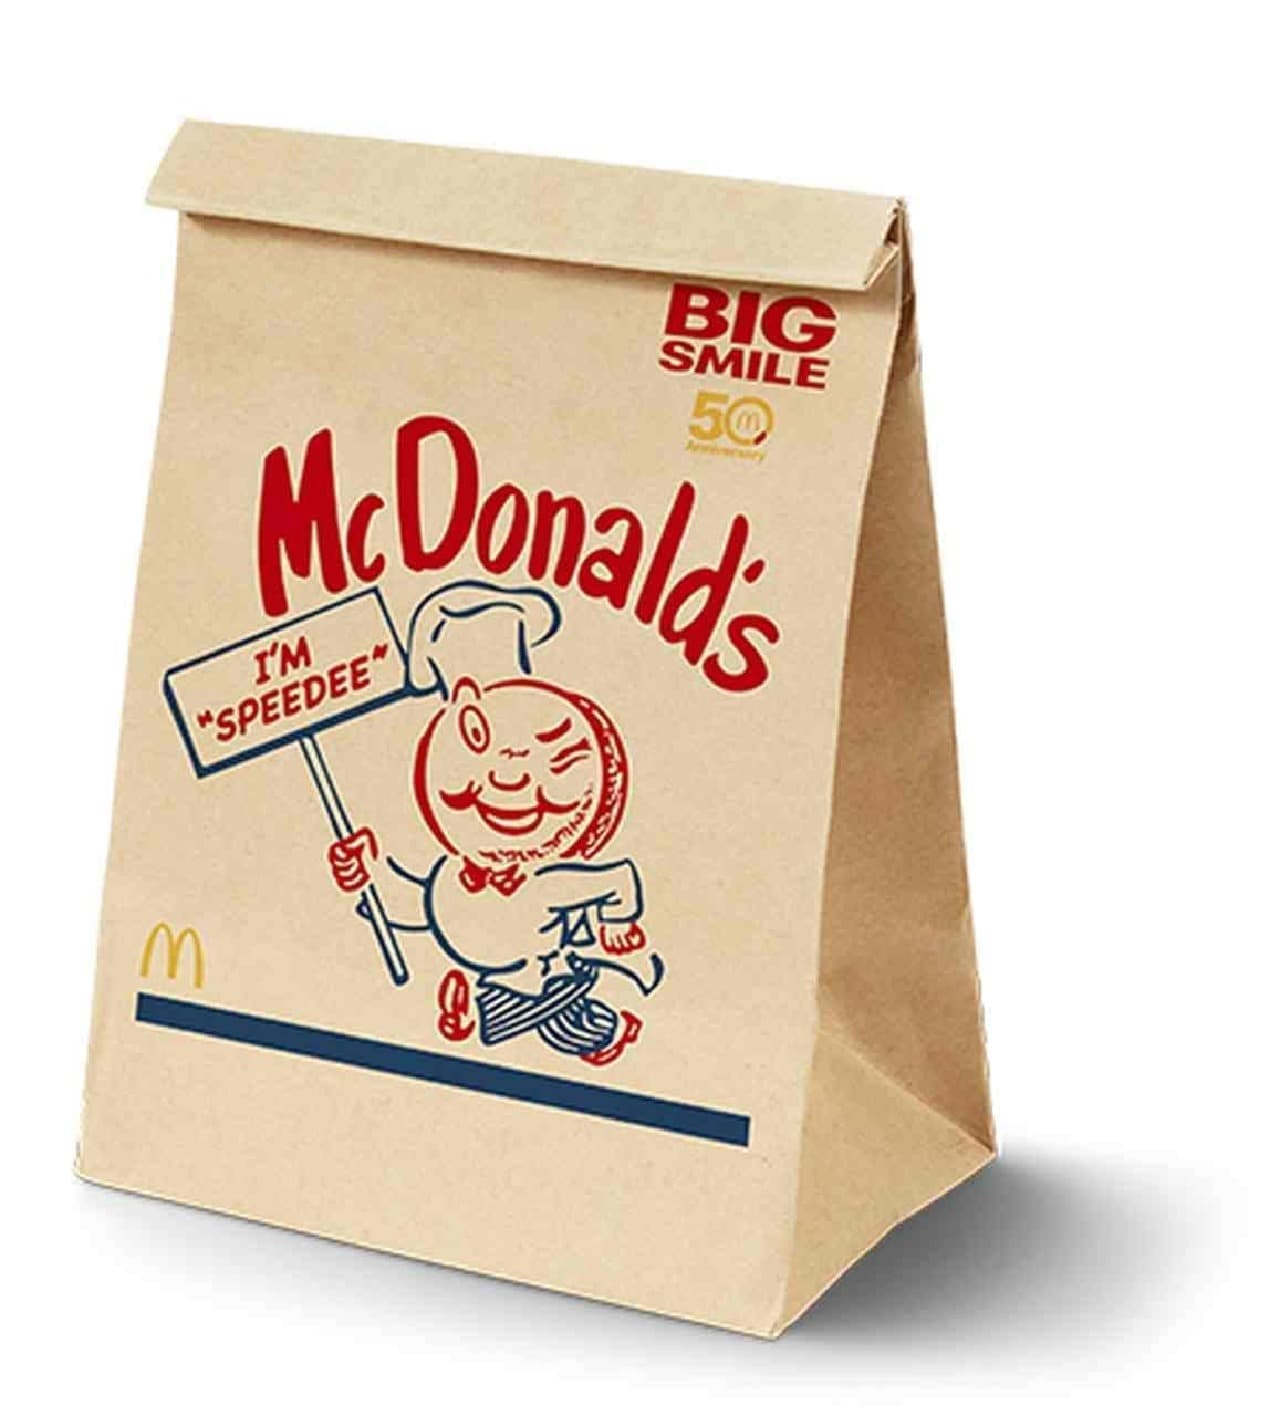 マクドナルドのキャラクター「スピーディー」がデザインされた特別パッケージ